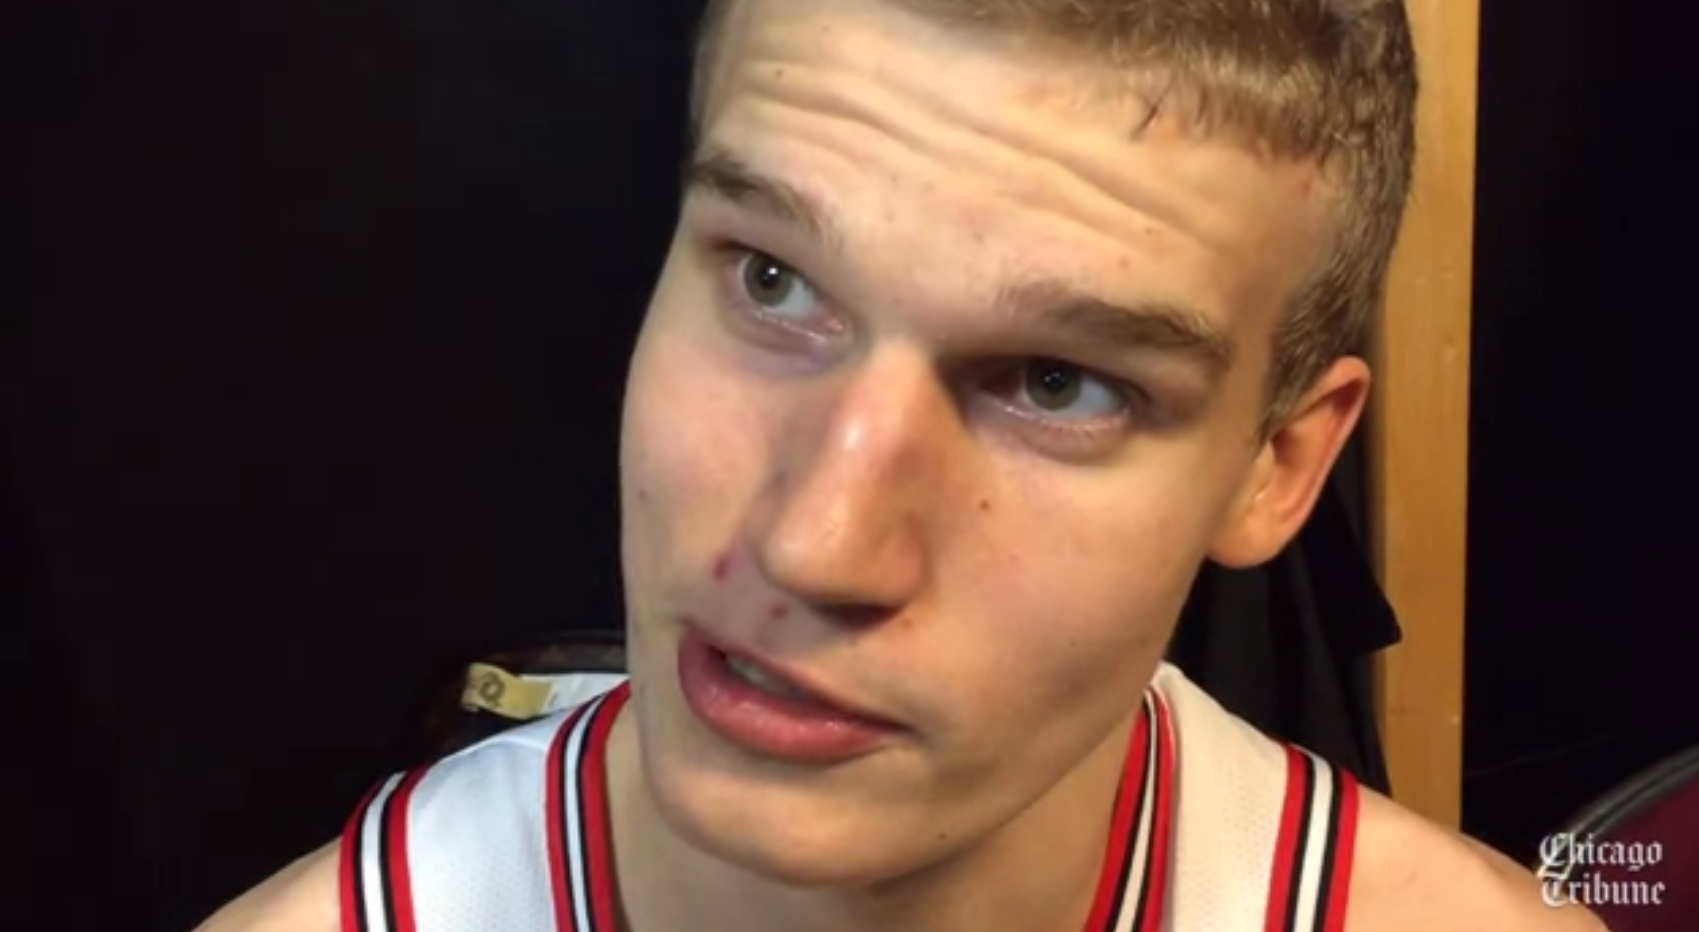 Chicago Bulls: Is Lauri Markkanen the next Dirk Nowitzki?